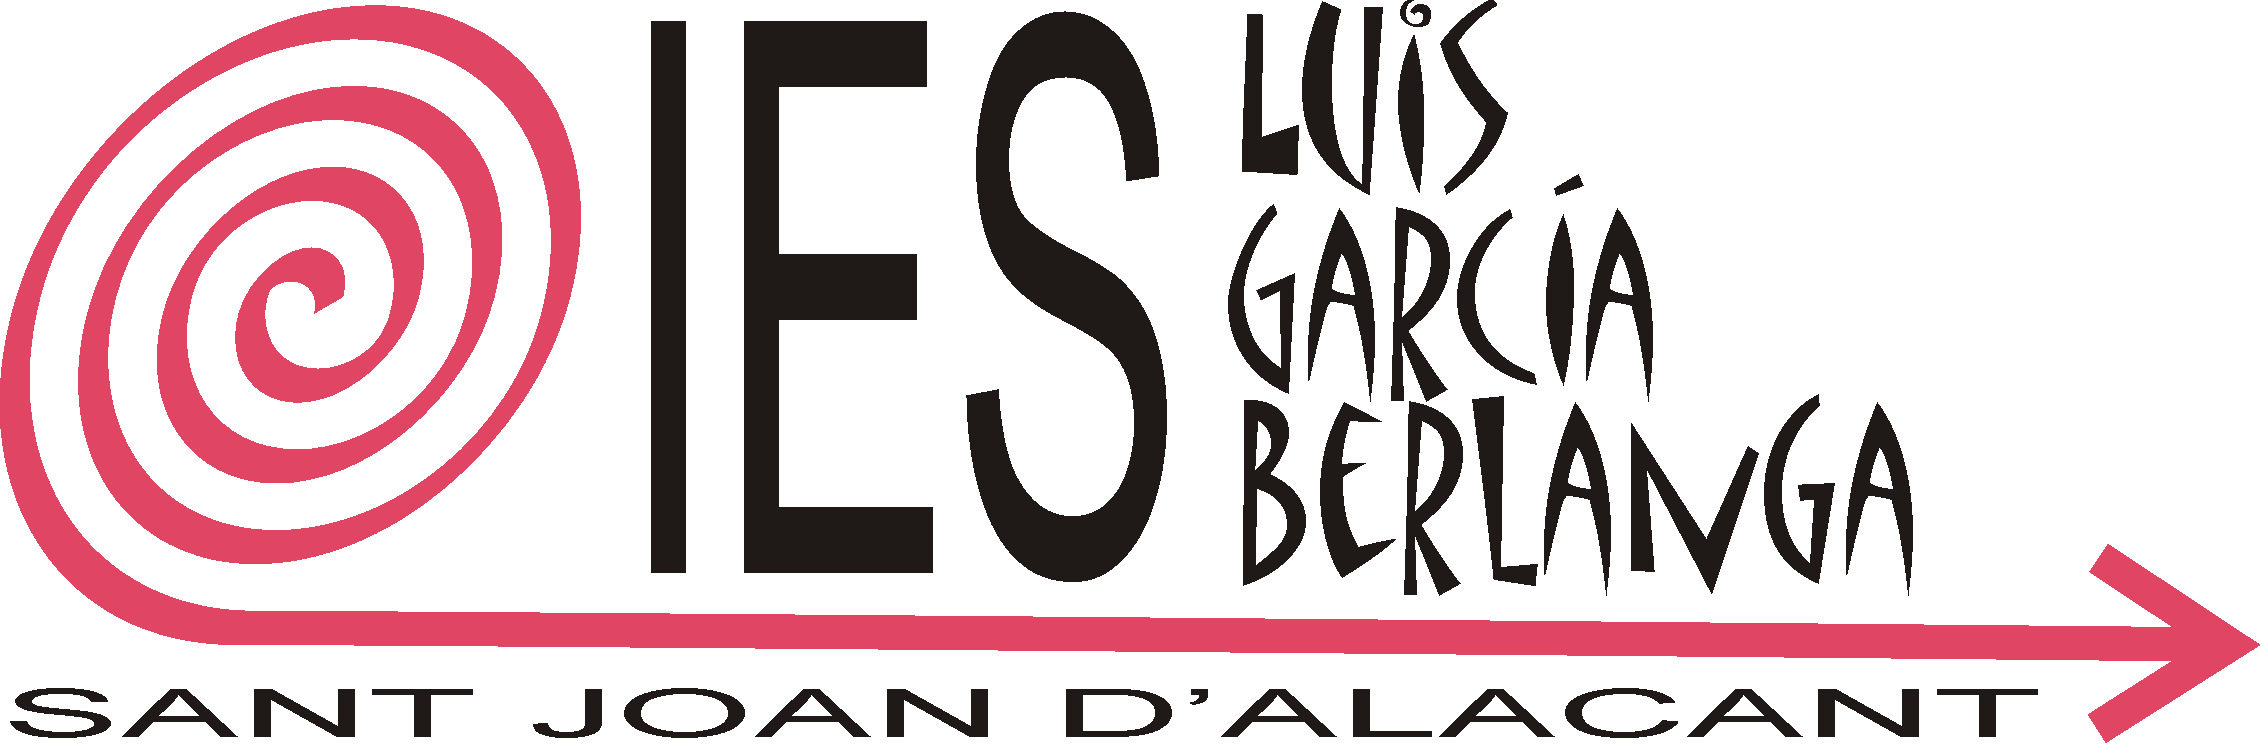 IES Luis García Berlanga